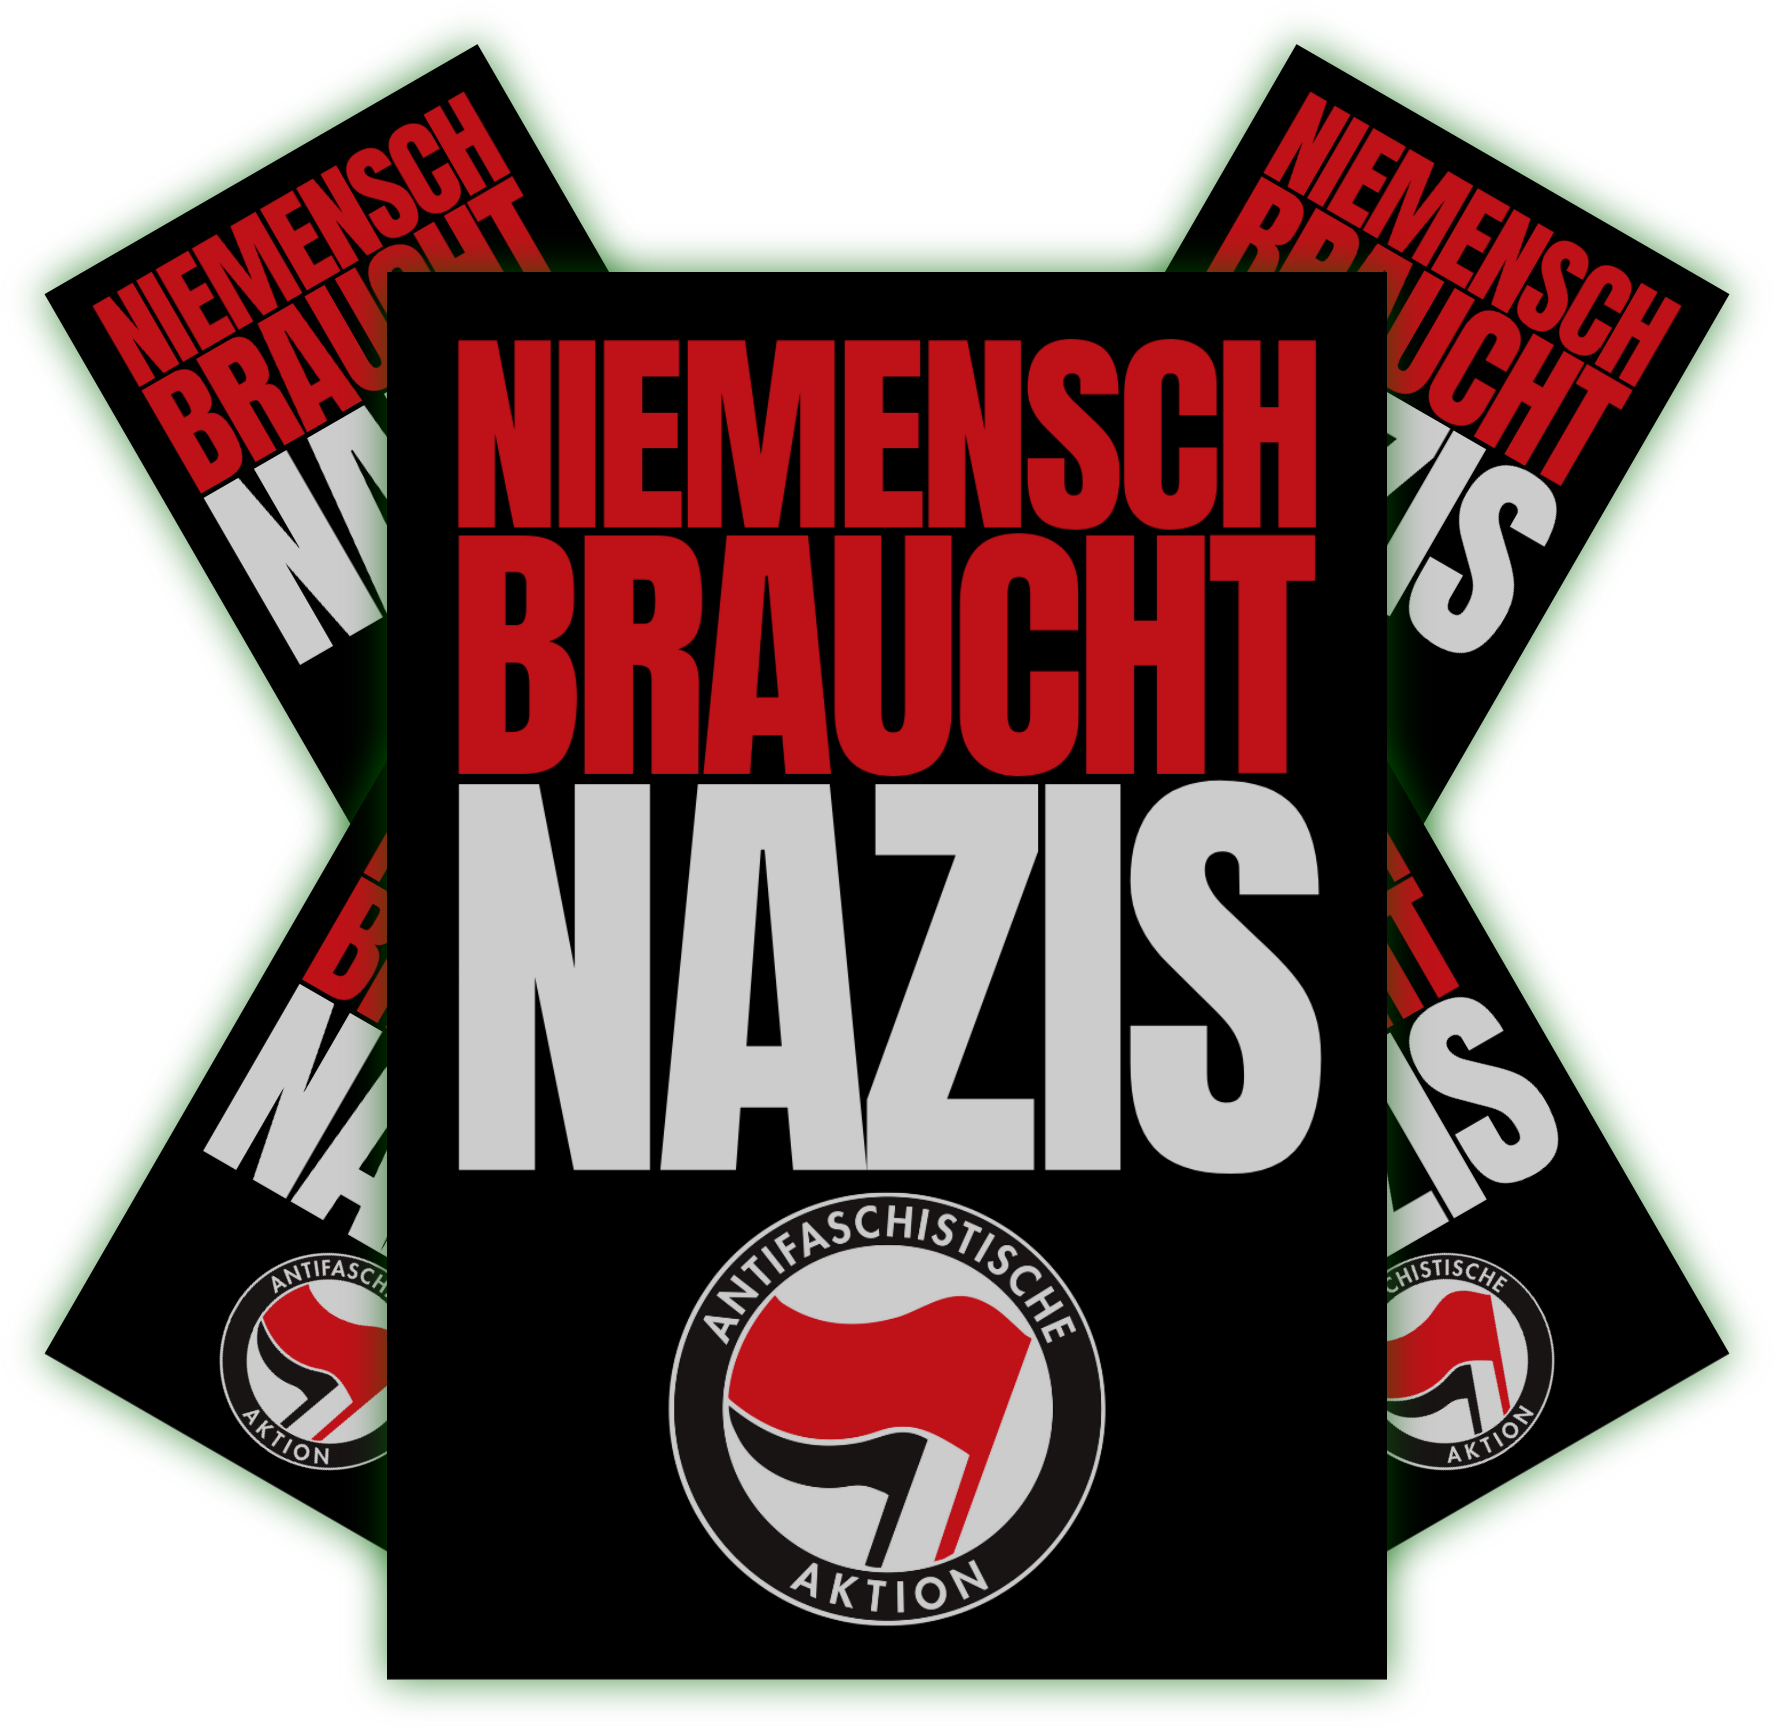 Niemensch braucht Nazis | Aufkleber